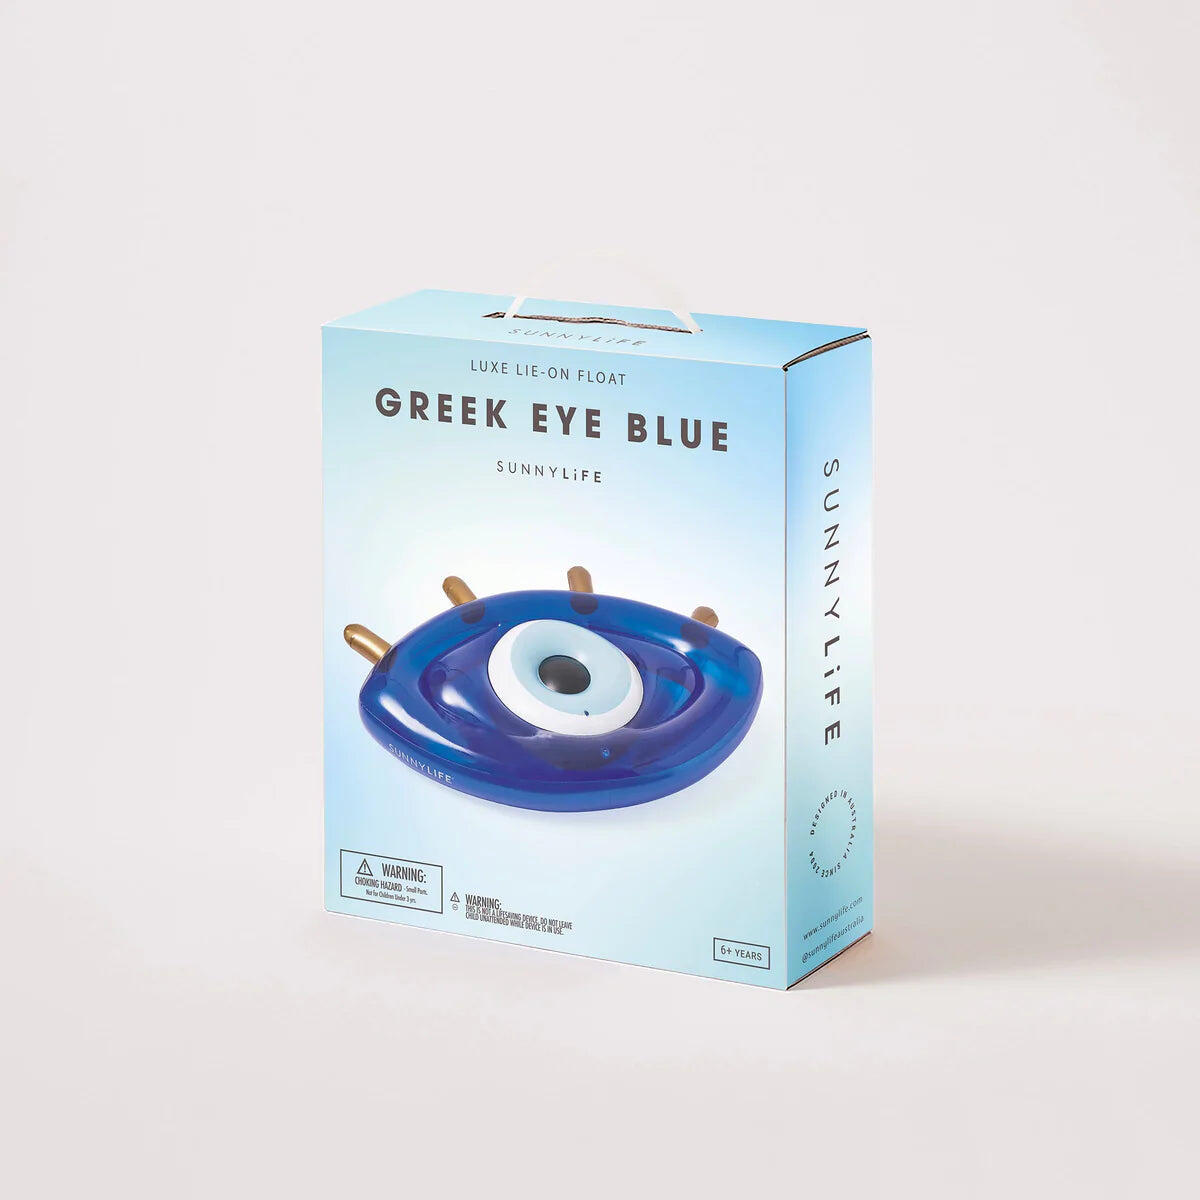 Luxe Lie-On Float Greek Eye Blue